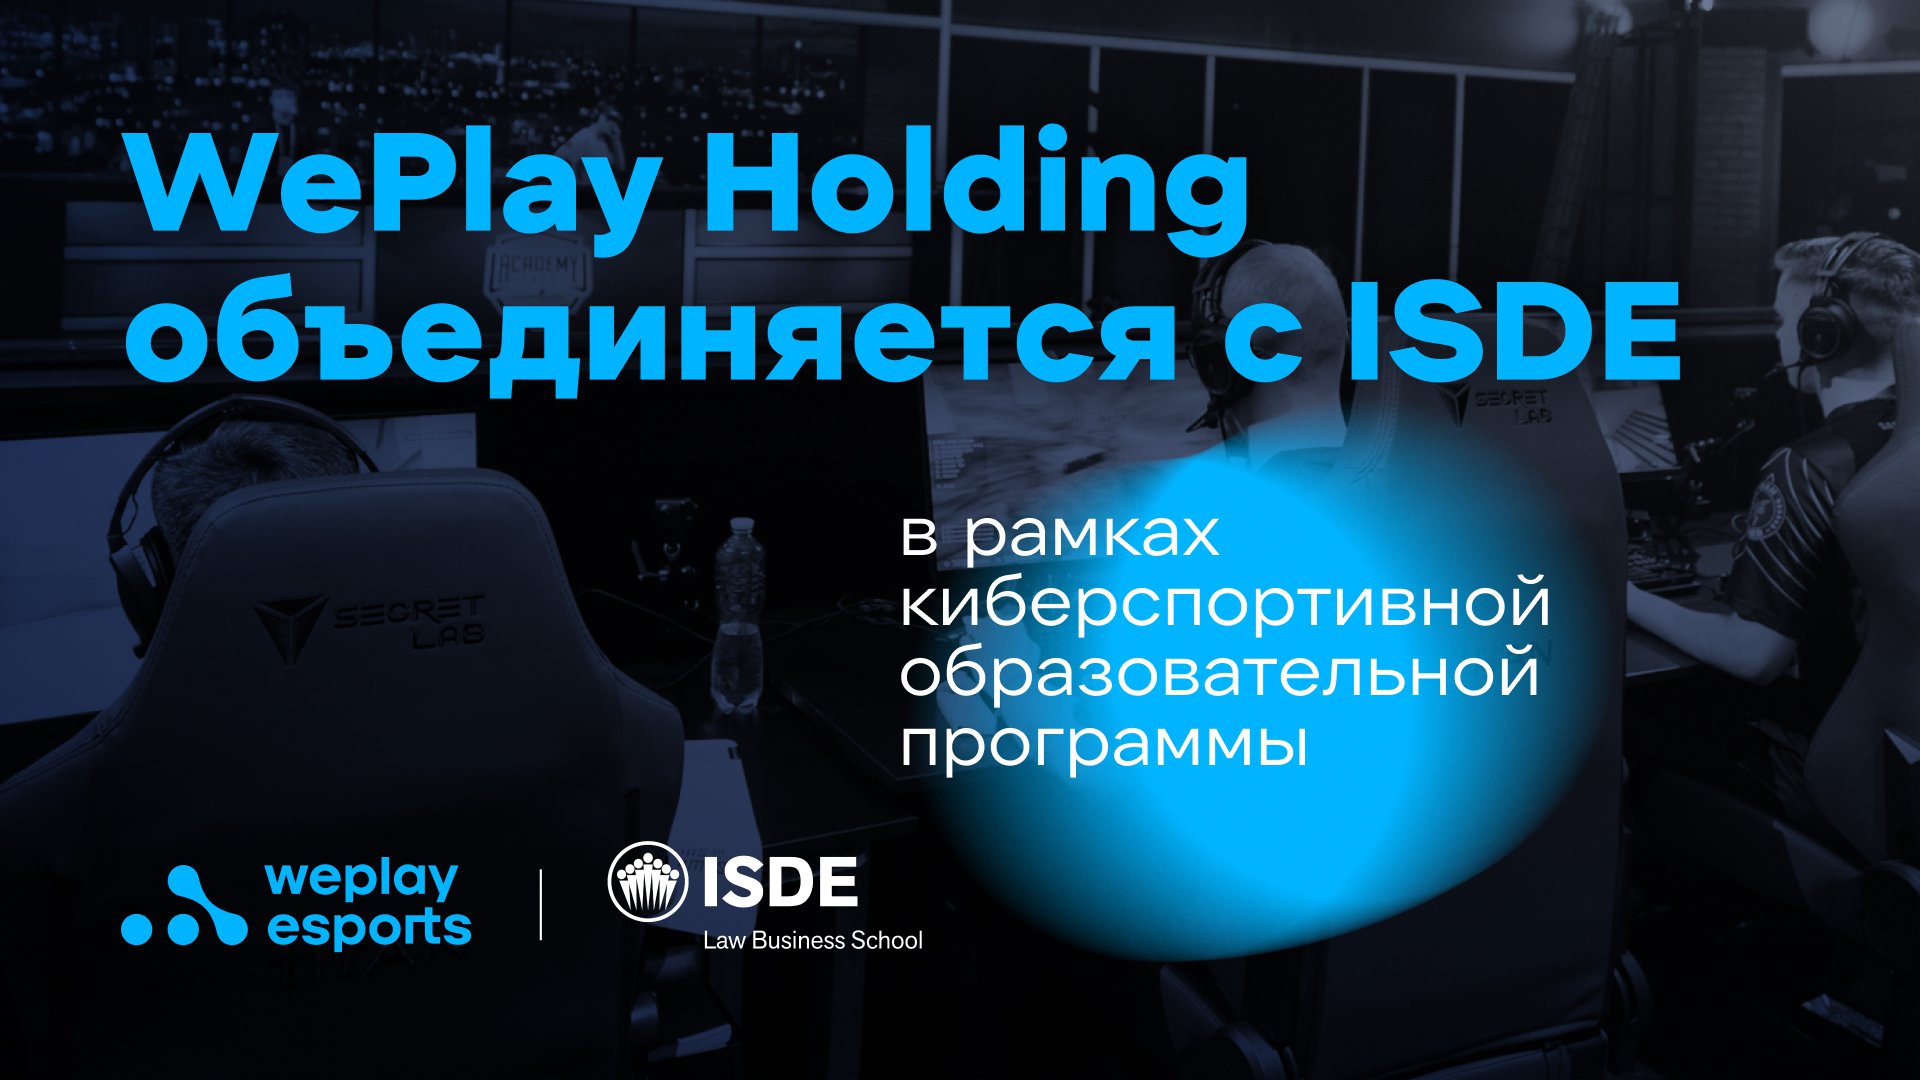 WePlay Holding объединяется с ISDE в рамках киберспортивной образовательной программы. Изображение: WePlay Holding